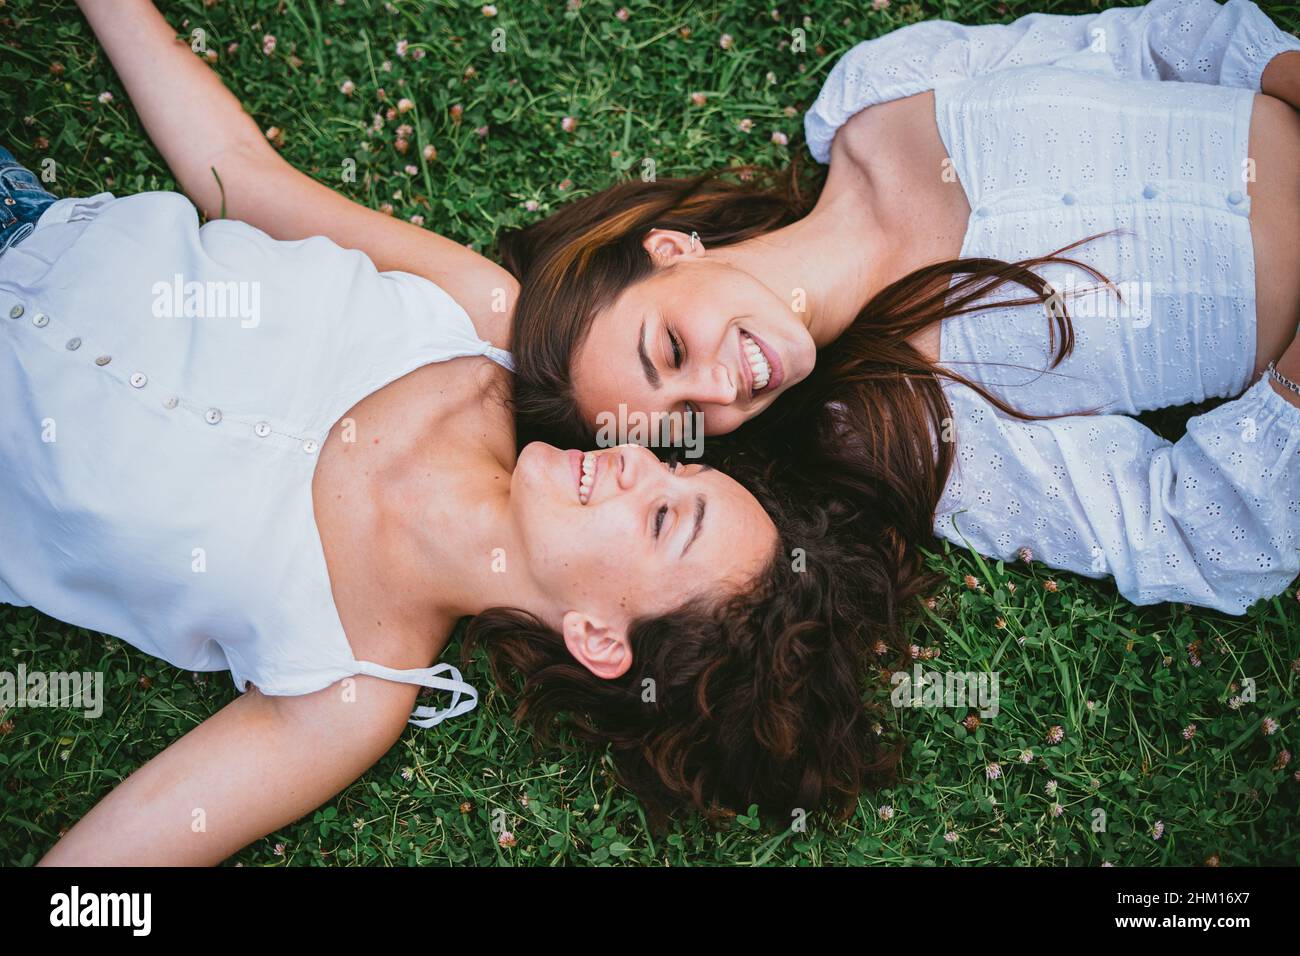 Zwei Teenager-Mädchen lächeln und blicken einander an, während sie sich in einem Park auf Gras niederlegen. Sie wirken entspannt. Stockfoto